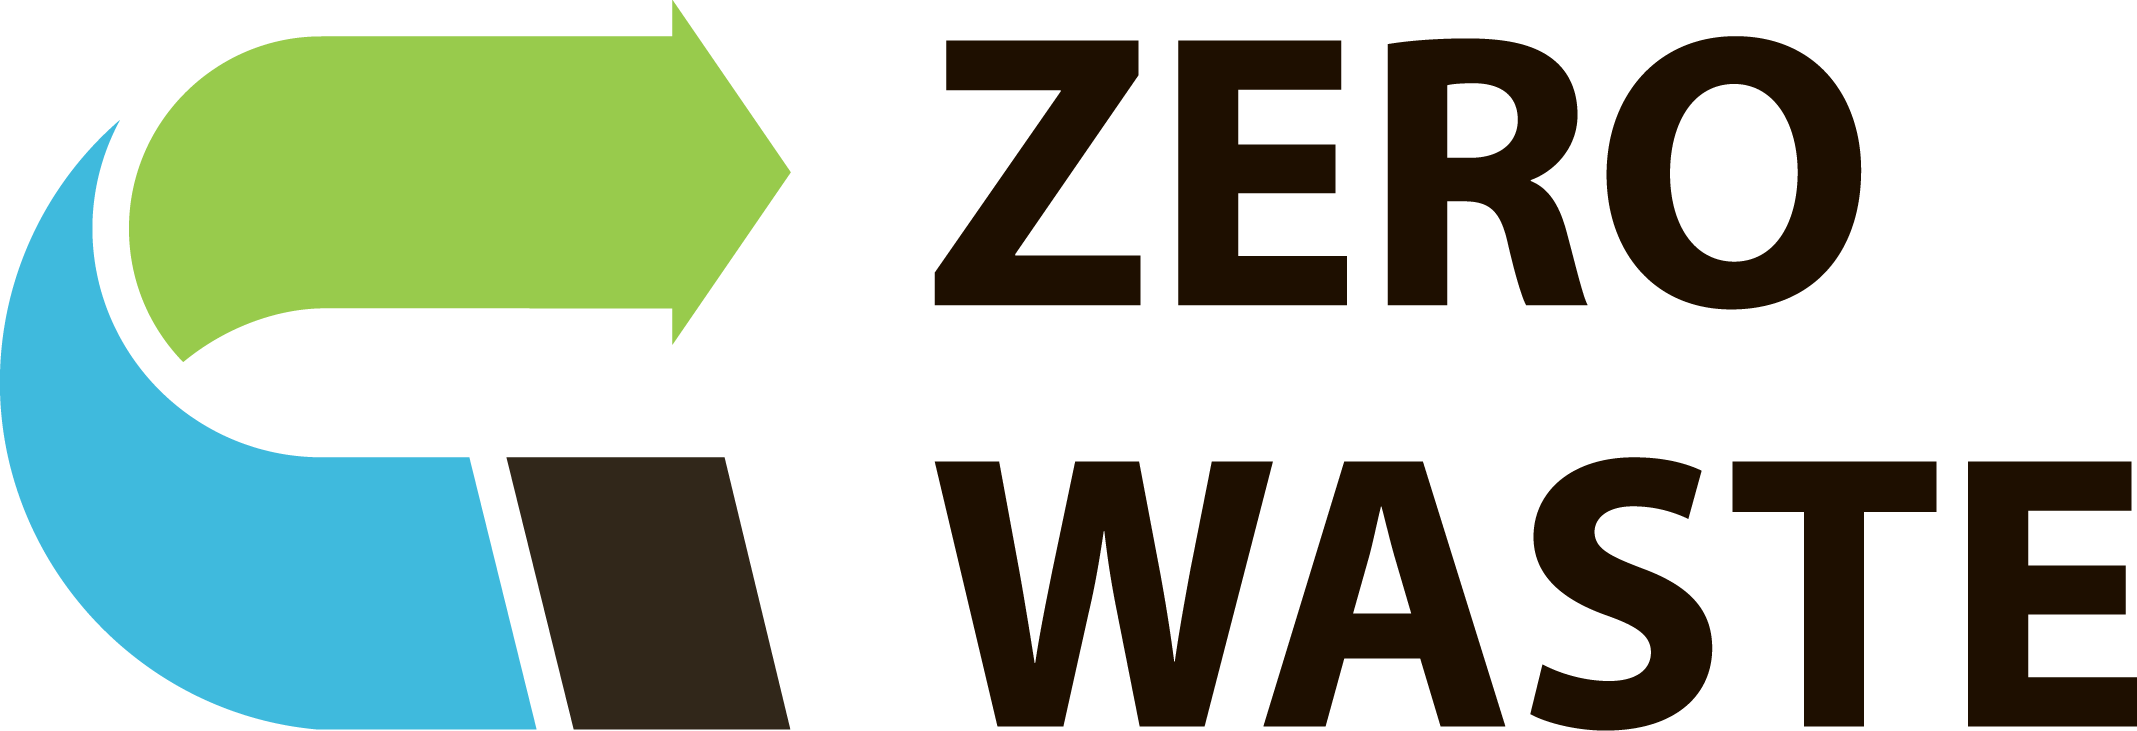 Группа компаний Zero Waste — решение вопросов сбережения природных ресурсов